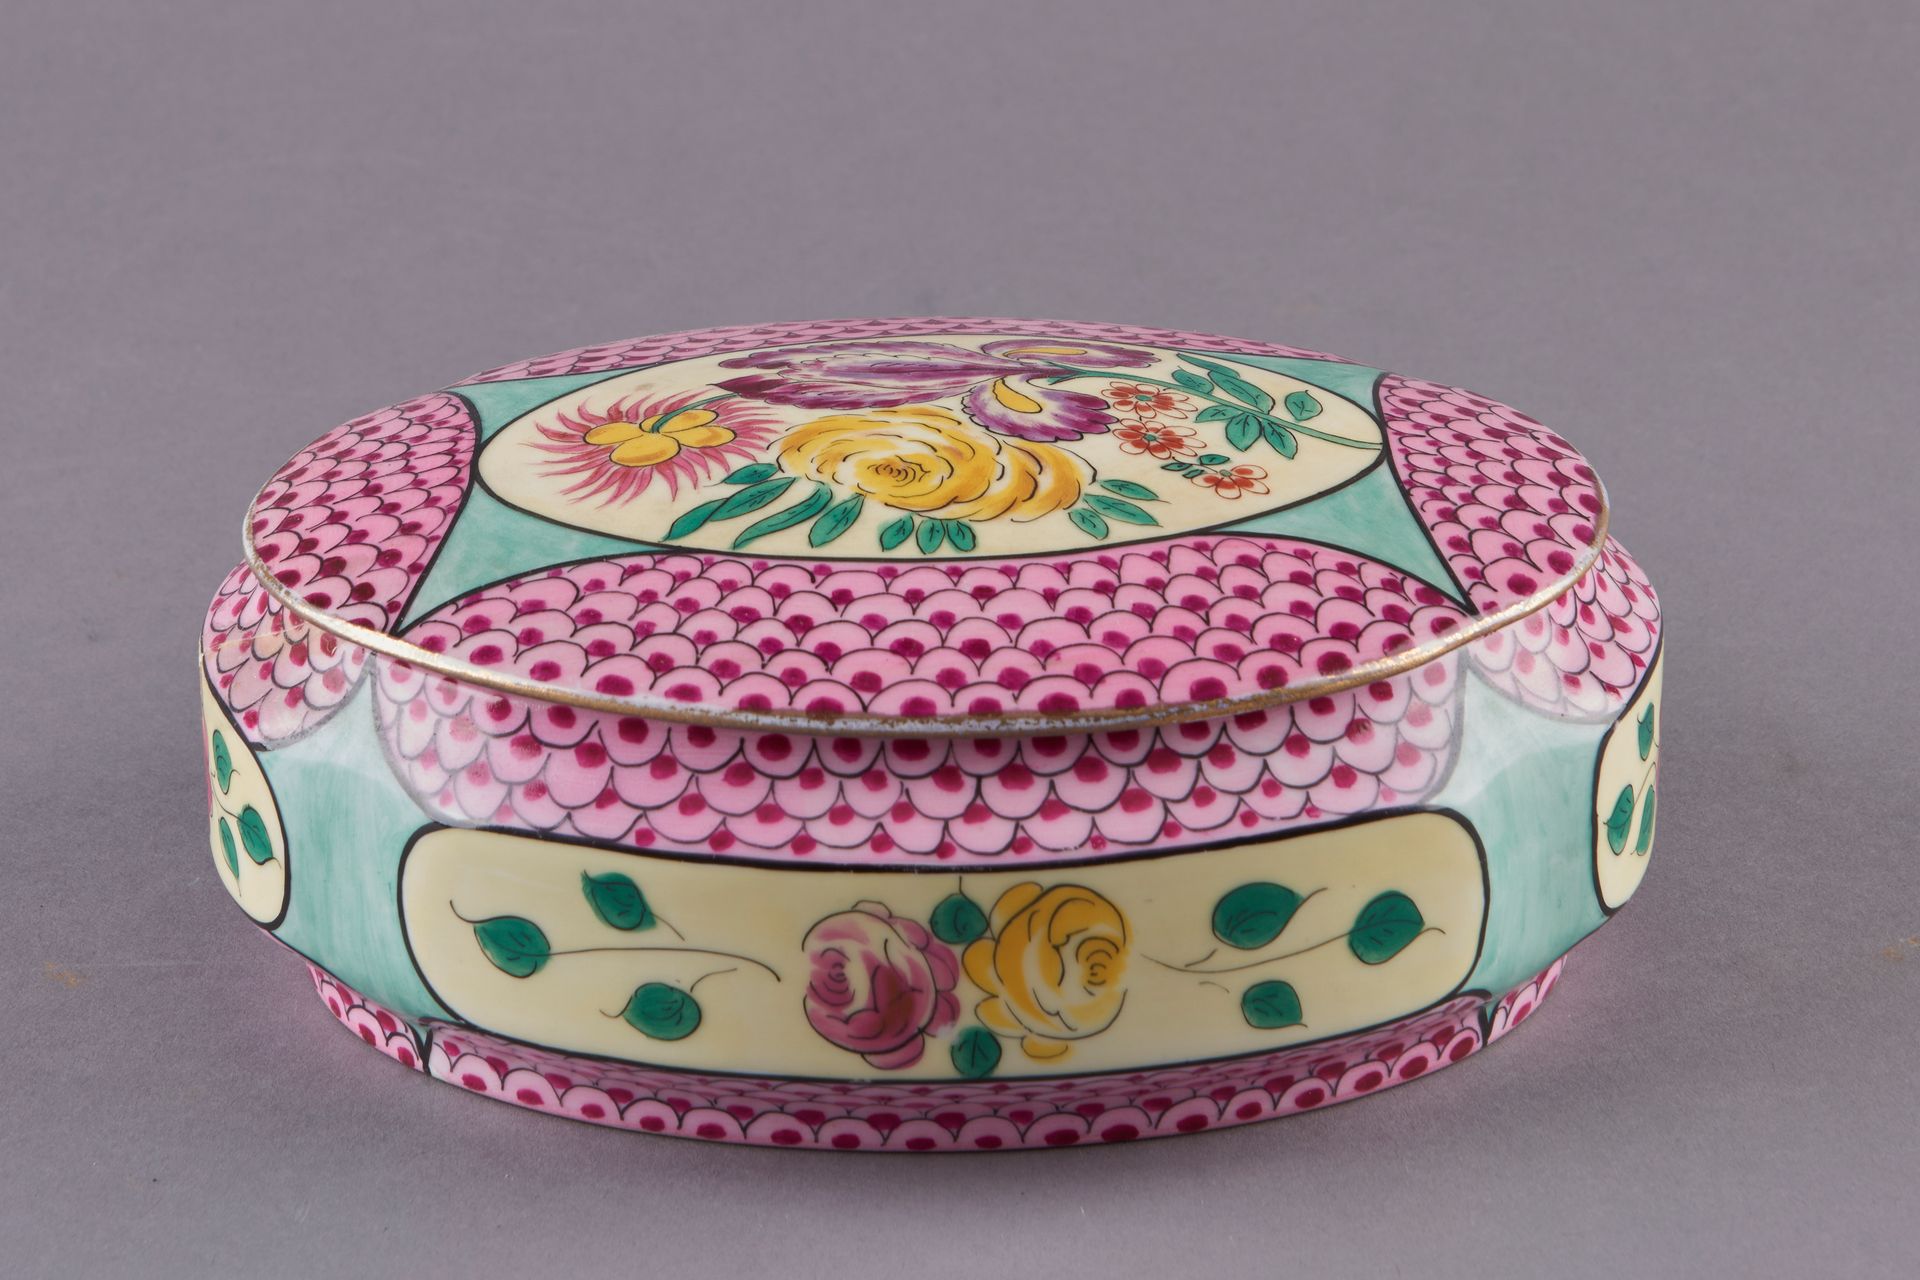 Null 利莫盖斯。瓷制的椭圆形糖果盒，在粉色康乃馨的背景上装饰有卡特尔的花朵。高7厘米，长20厘米。19世纪末-20世纪初。(裂缝)